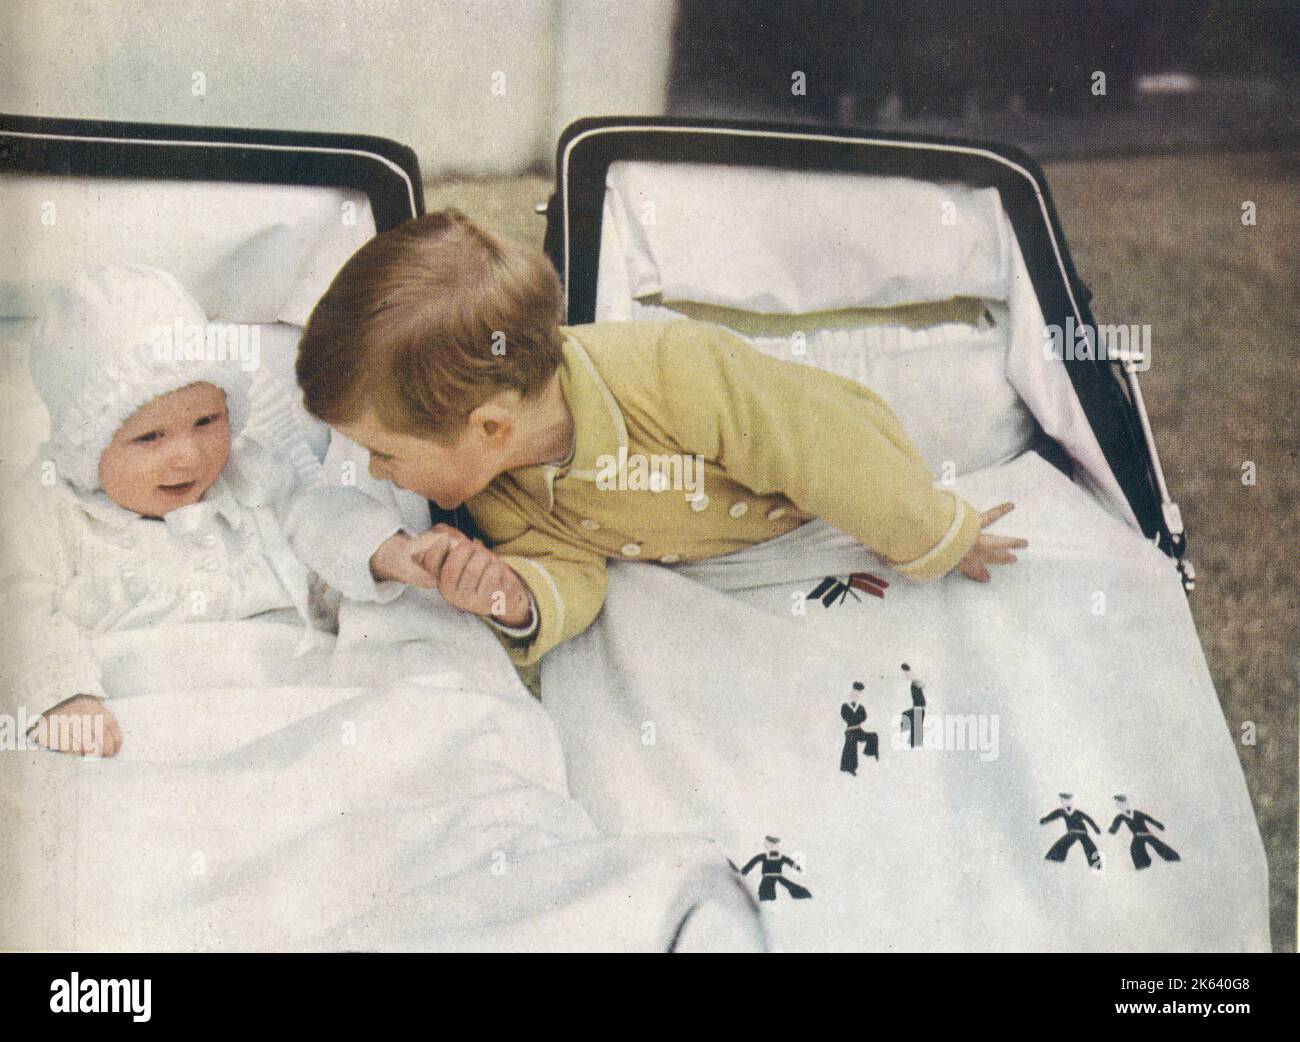 Prinz Charles lehnt sich über seinen Kinderwagen, um die Hand seiner kleinen Schwester, Prinzessin Anne, zu nehmen. Datum: 1951 Stockfoto